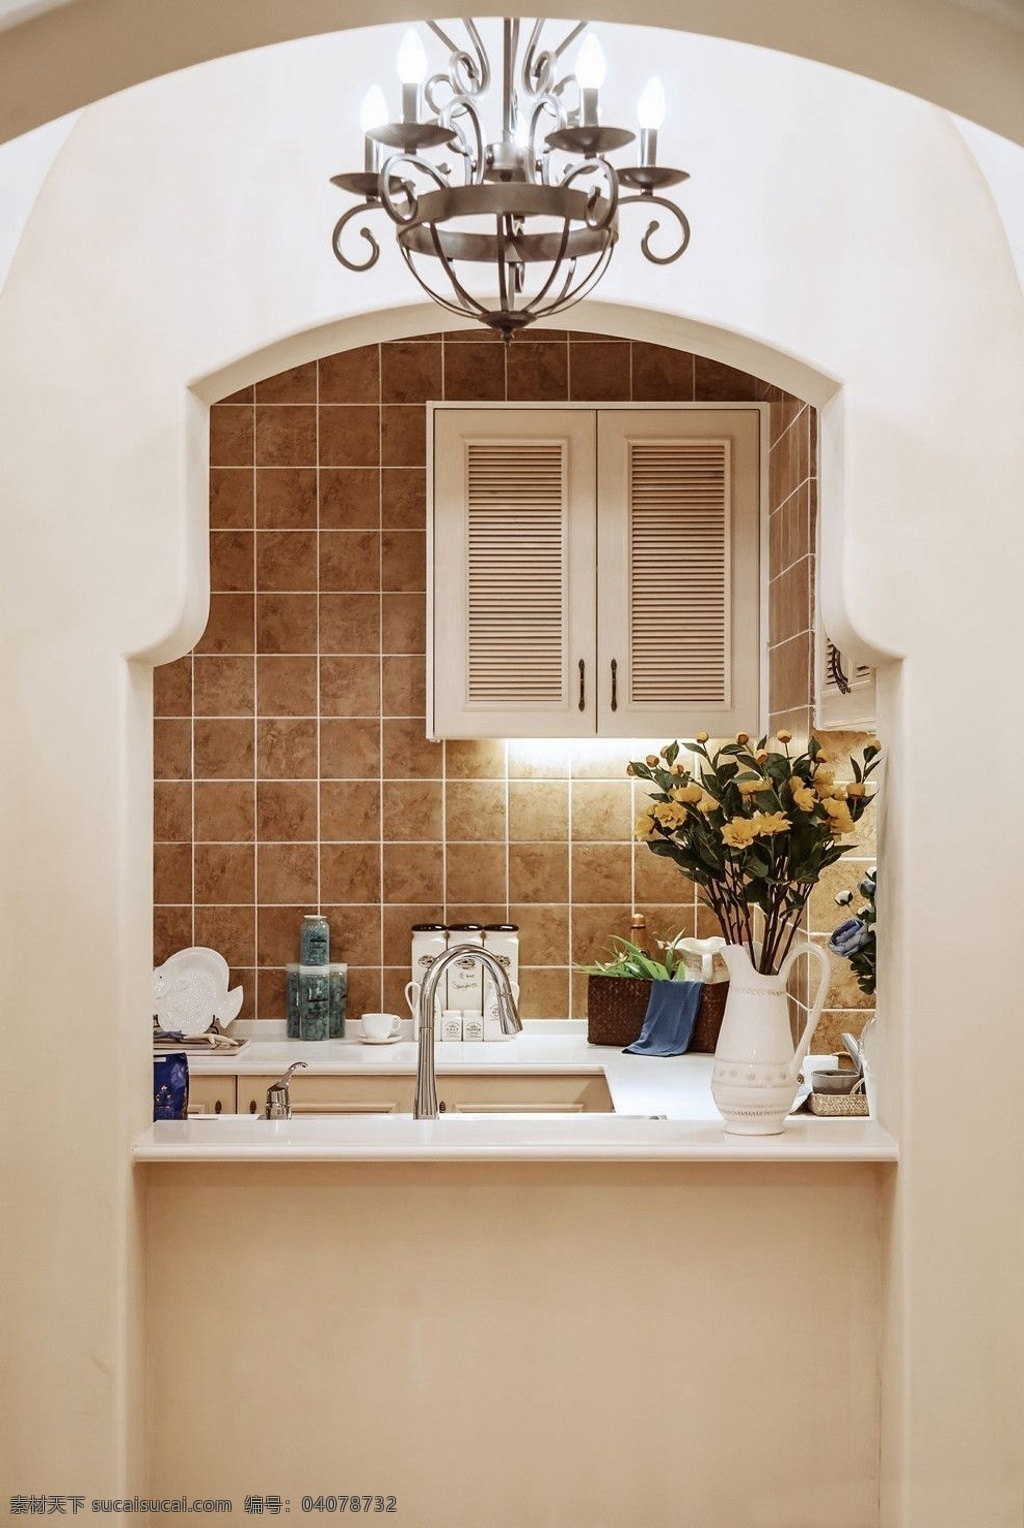 简约 风 室内设计 厨房 拱门 洗菜池 效果图 现代 料理台 白色 调 吊灯 壁柜 家装